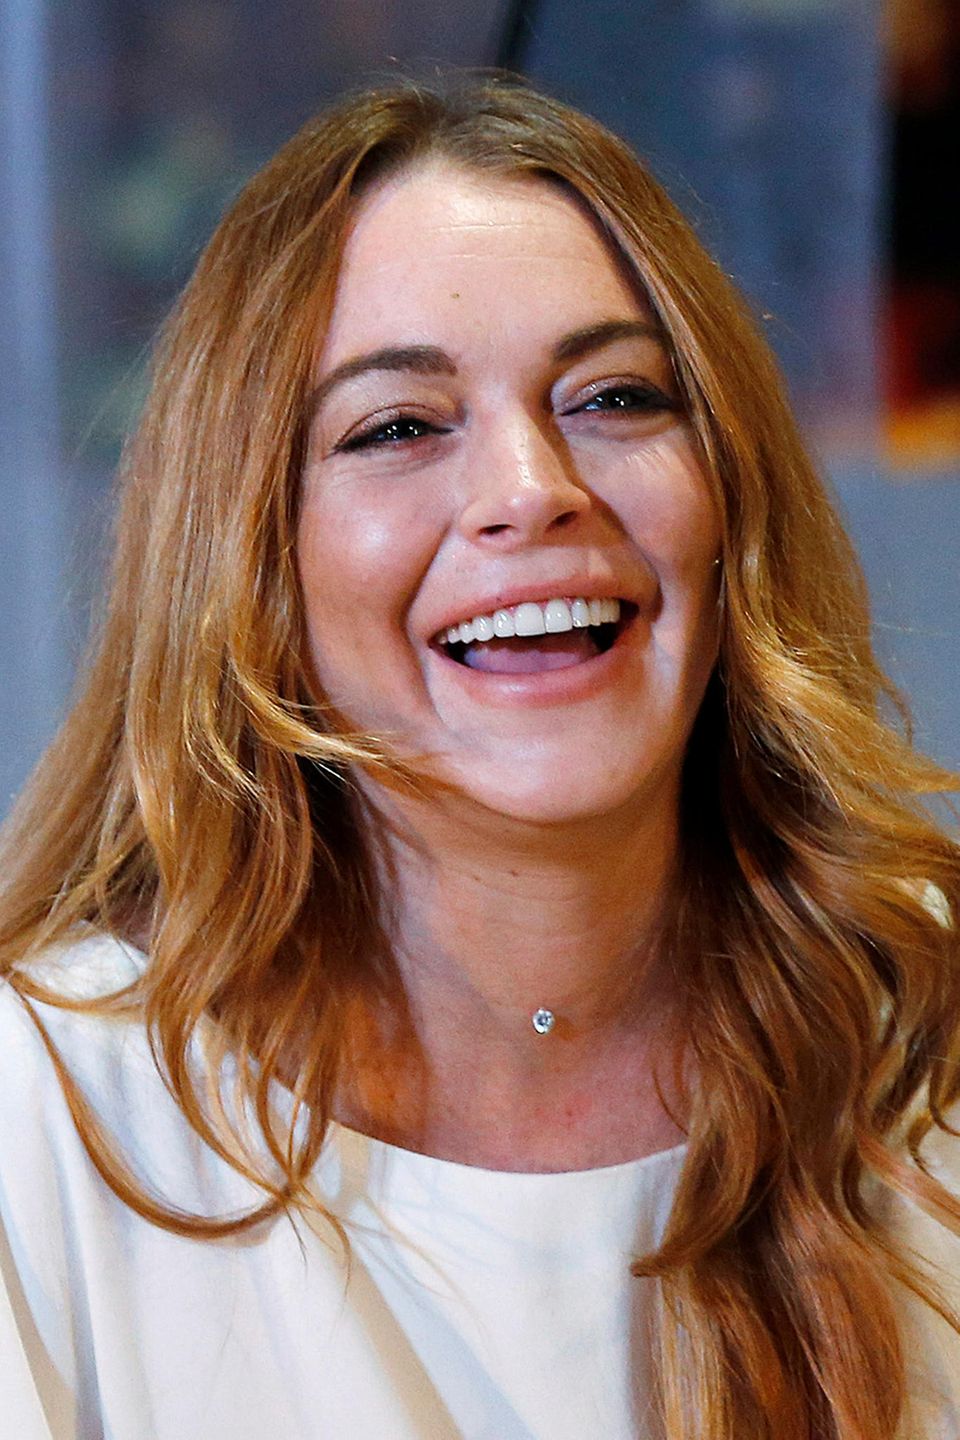 Die wilden Partynächte sind auch an Lindsay Lohan nicht vorbeigegangen, und schon früh hat sie diese Spuren mit kosmetischen Hilfmitteln zu bekämpfen versucht. Vor drei Jahren war dabei zumindest noch Natürlichkeit in ihrer Mimik, gerade beim Lachen zu sehen.